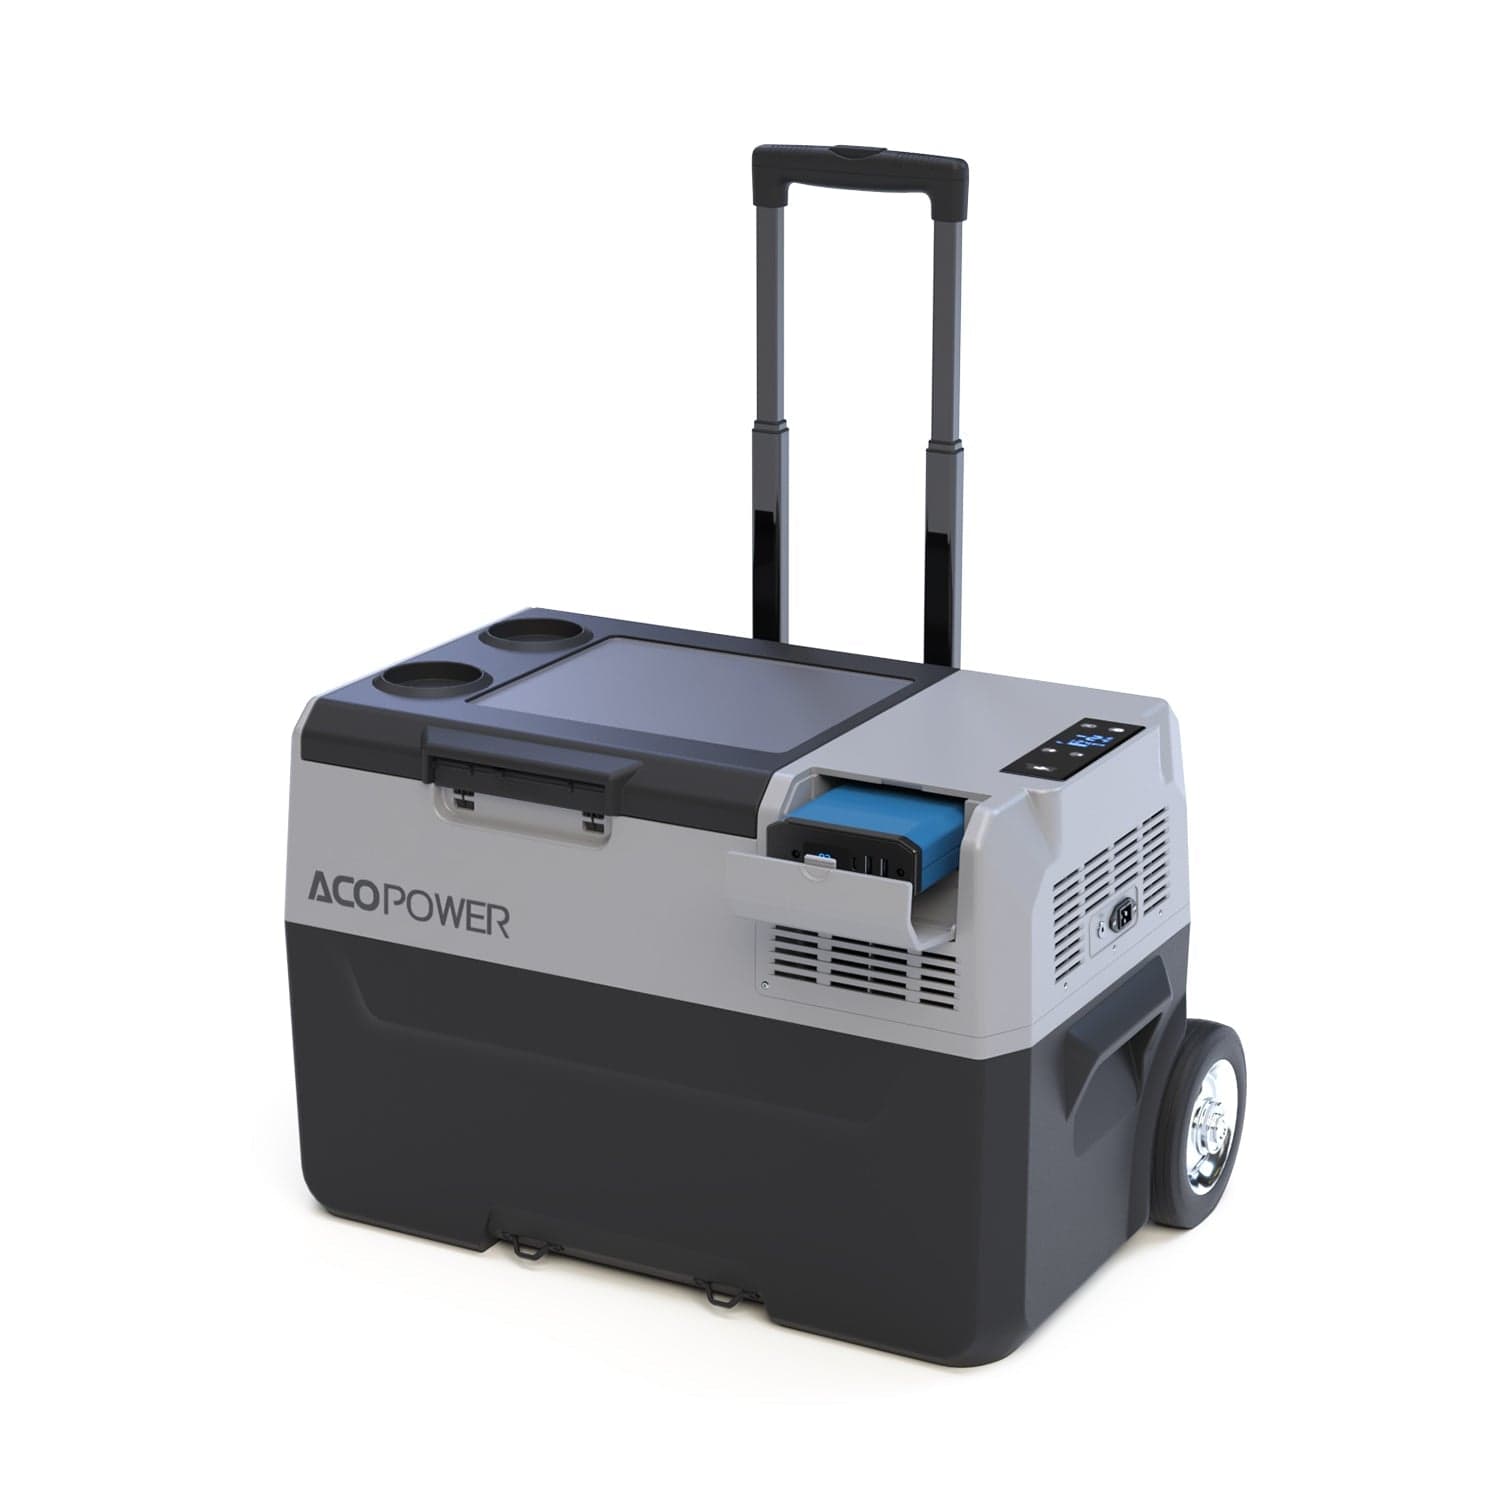 LiONCooler Pro Portable Solar Fridge Freezer, 32 Quarts, Used Like New AcoPower With Battery Fridges